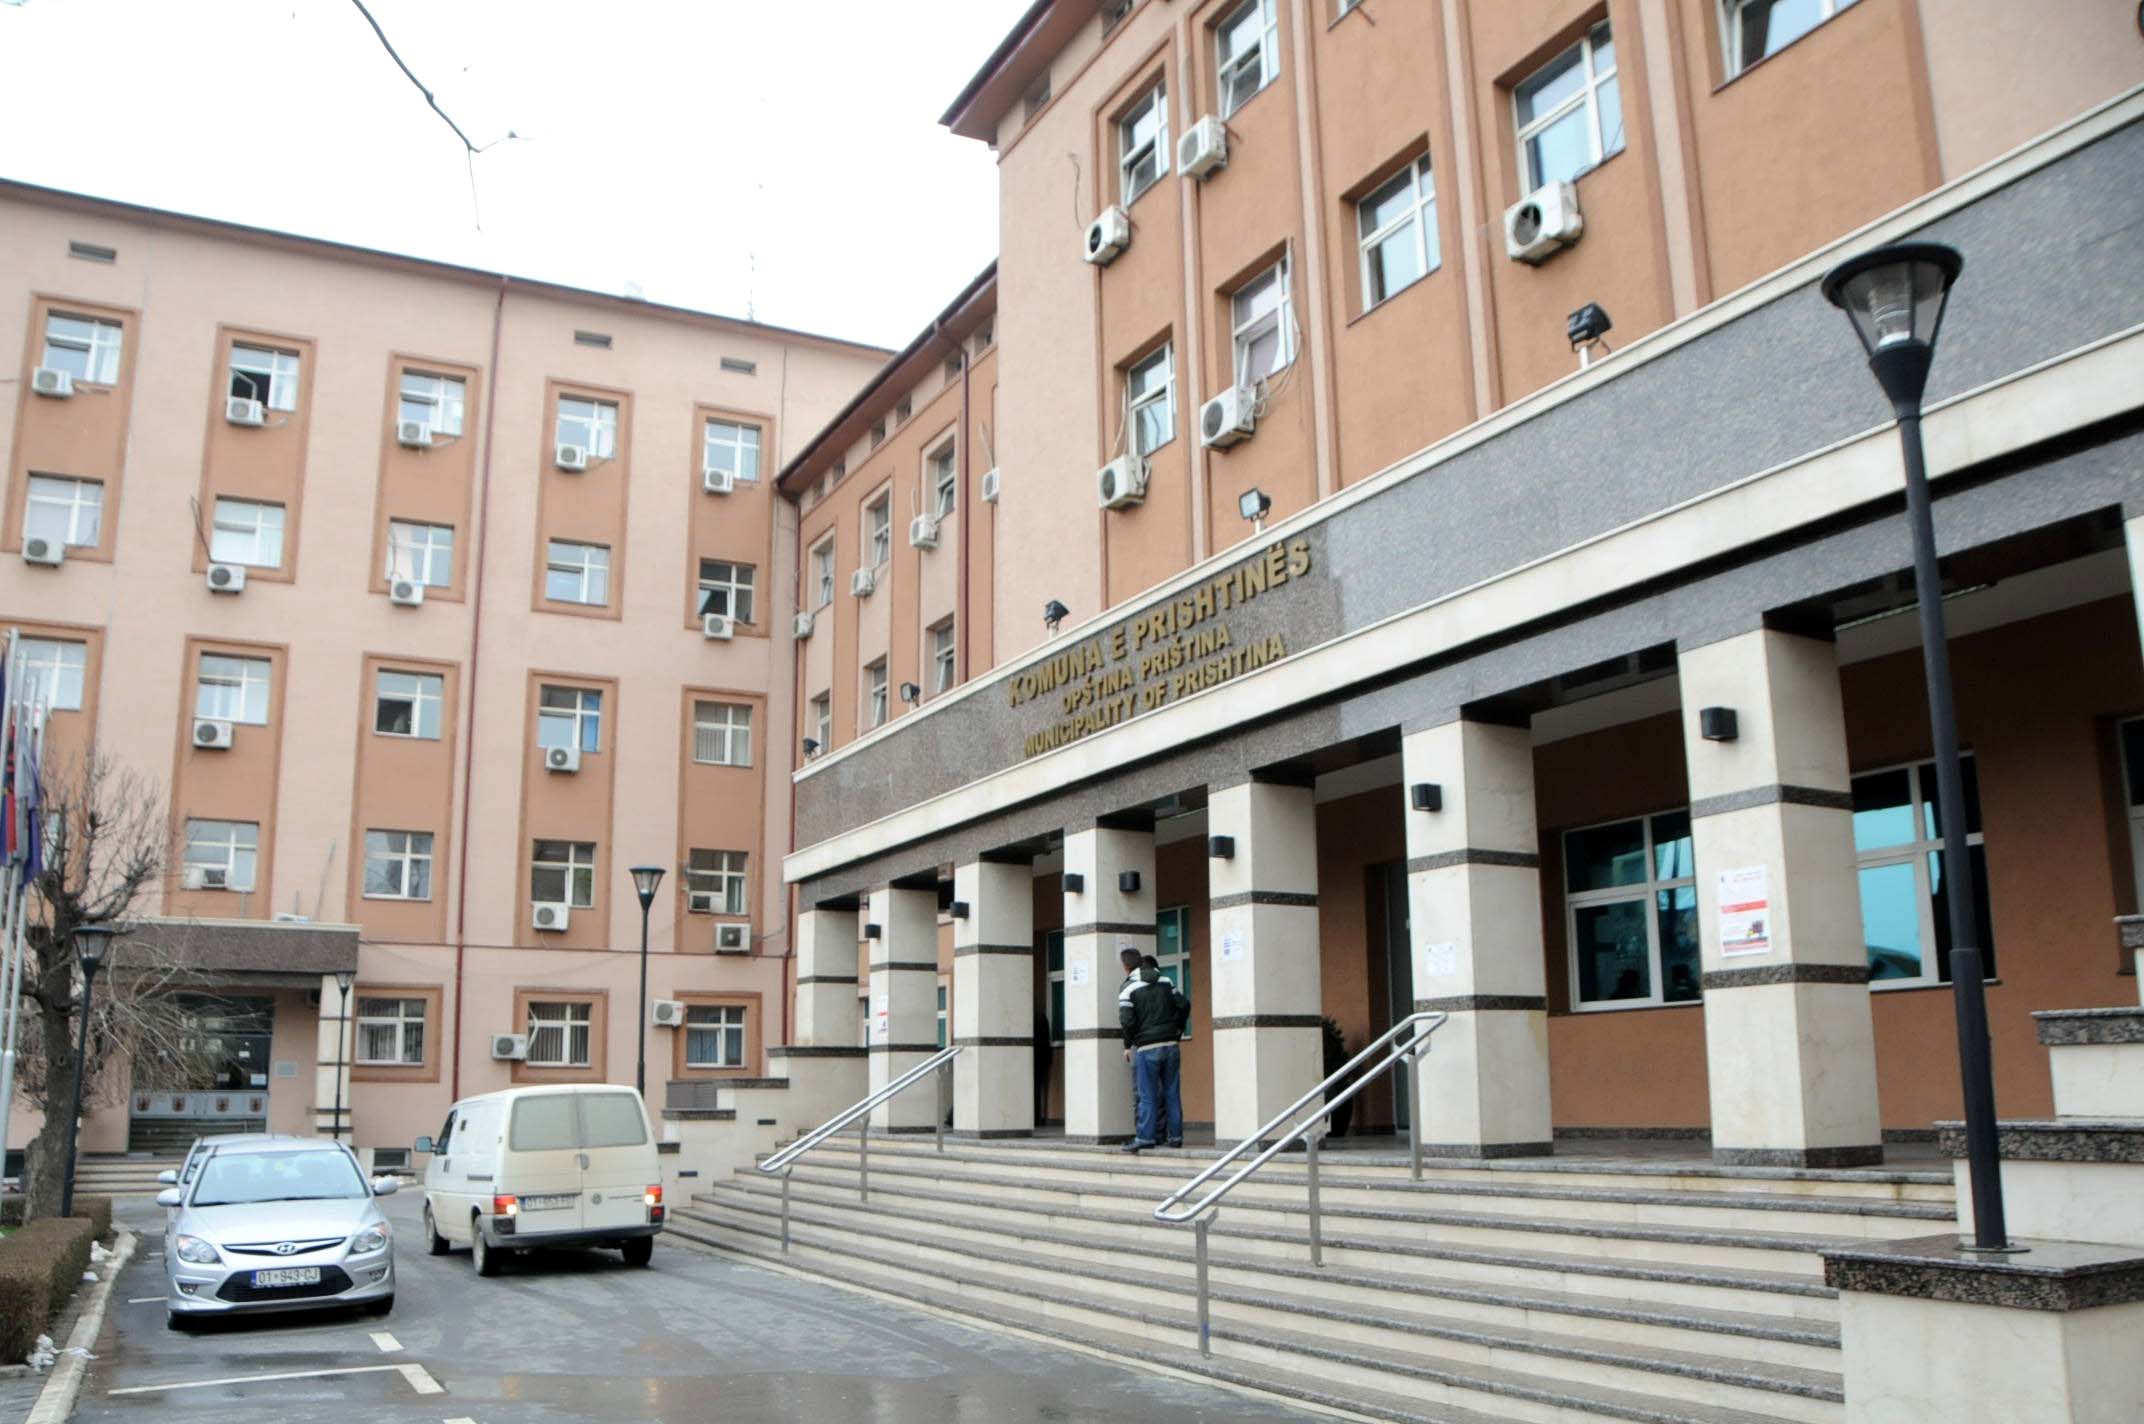 Kush u bë “sebep” që Komuna e Prishtinës humbi 1.4 milionë euro nga vendimet gjyqësore?